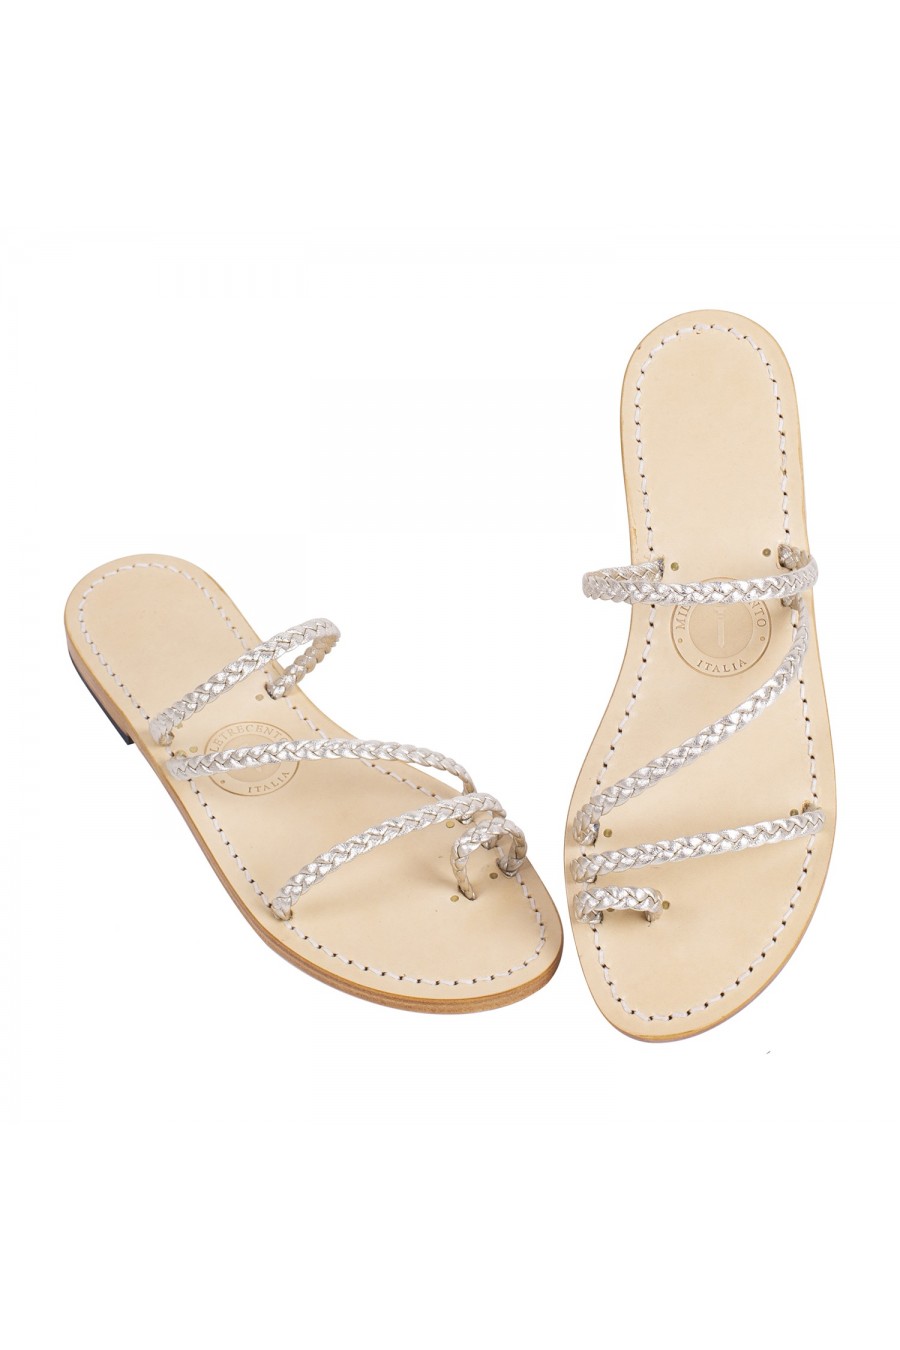 Firenze Platinum handmade strappy sandals | Milletrecento